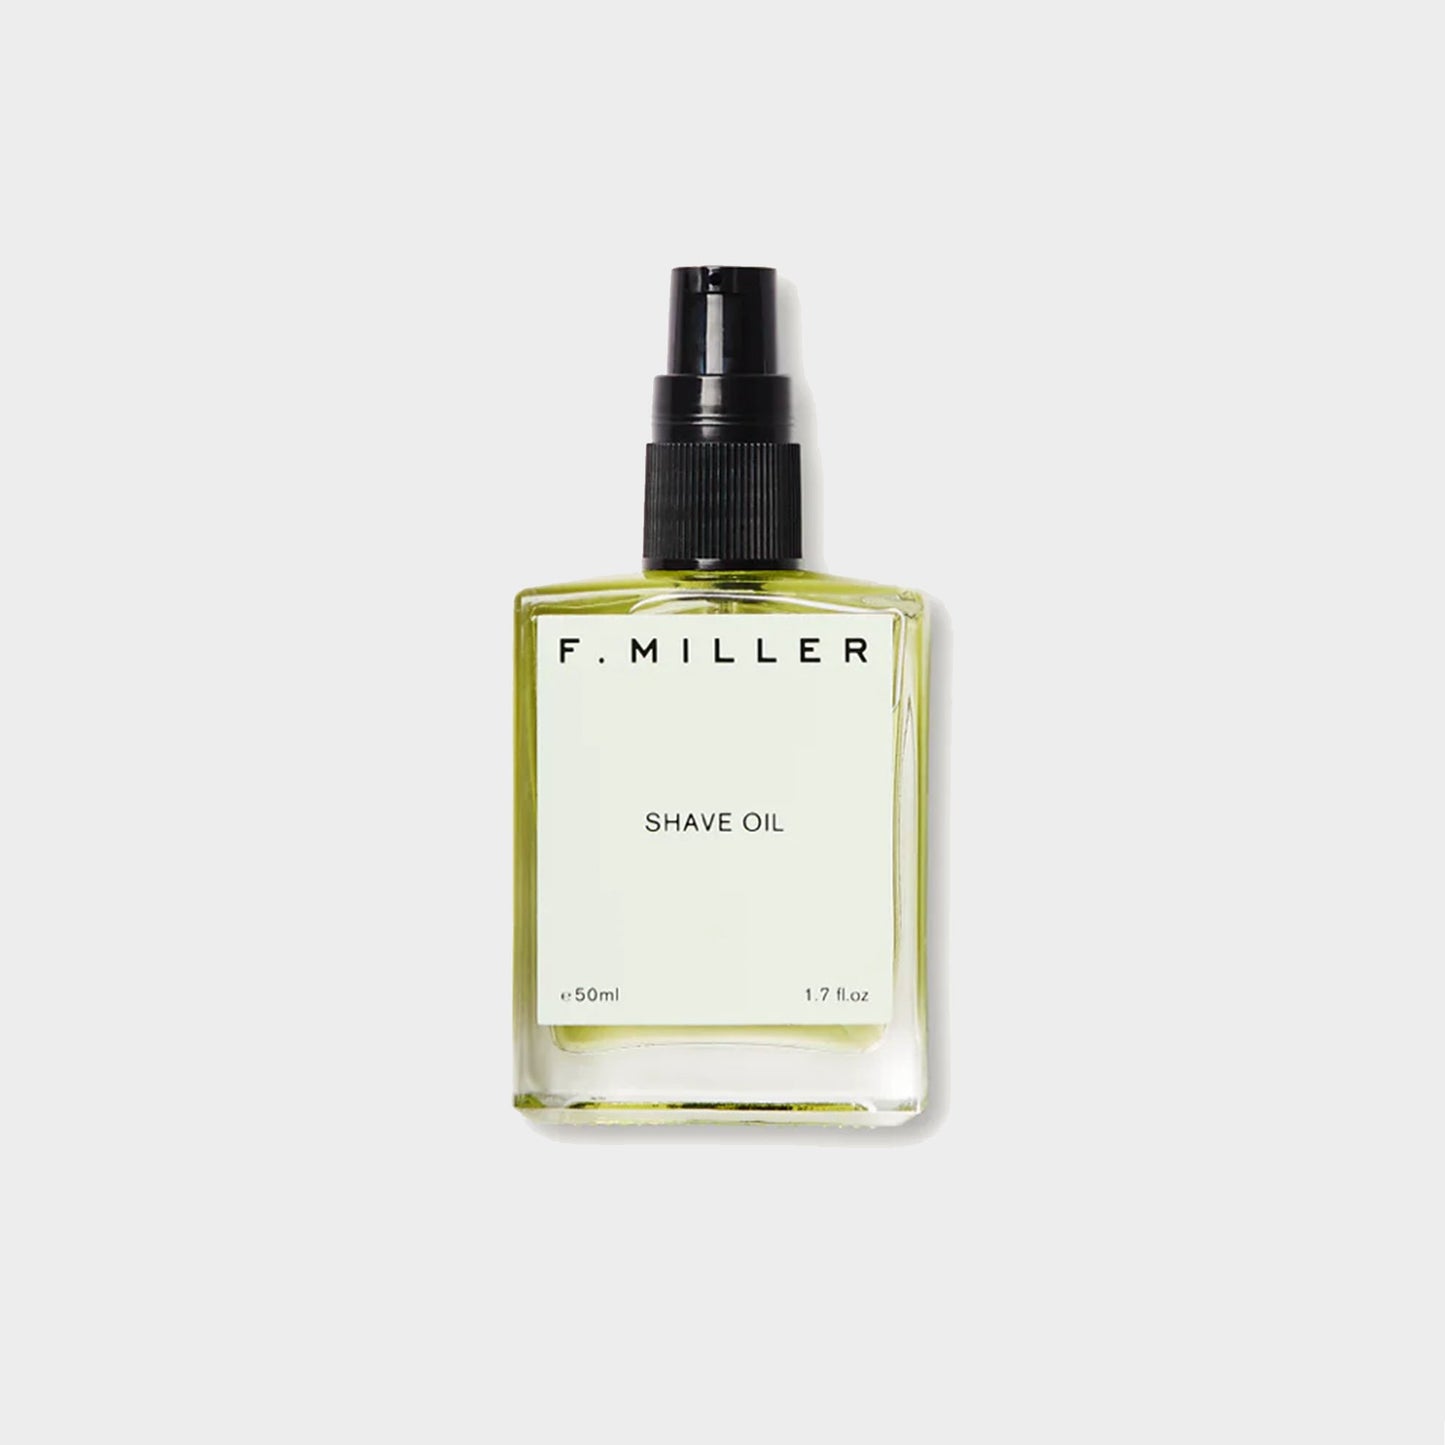 F. Miller Shave Oil 50ml